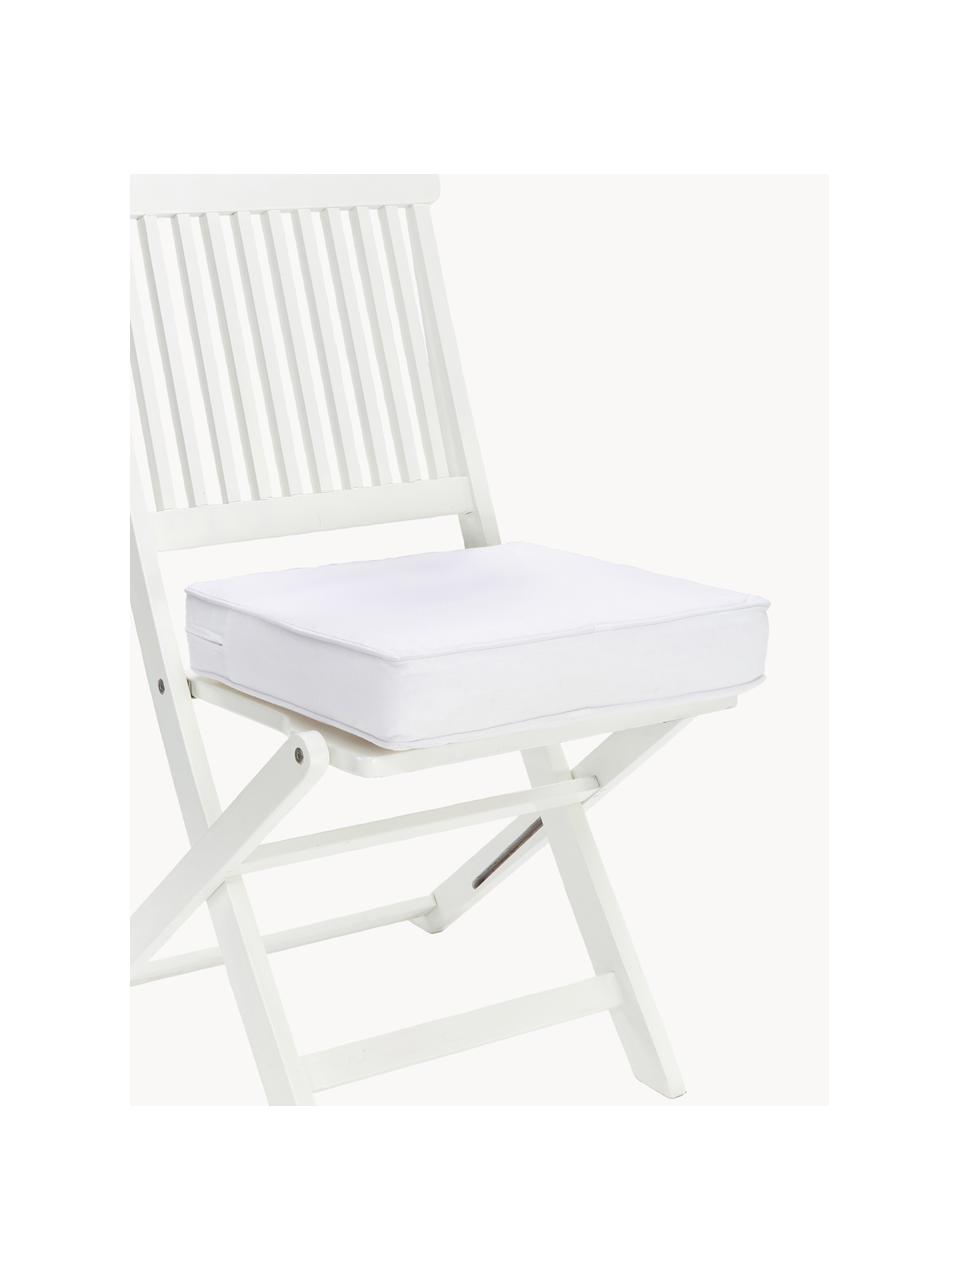 Hohes Sitzkissen Zoey, 2 Stück, Bezug: 100 % Baumwolle, Weiß, B 40 x L 40 cm